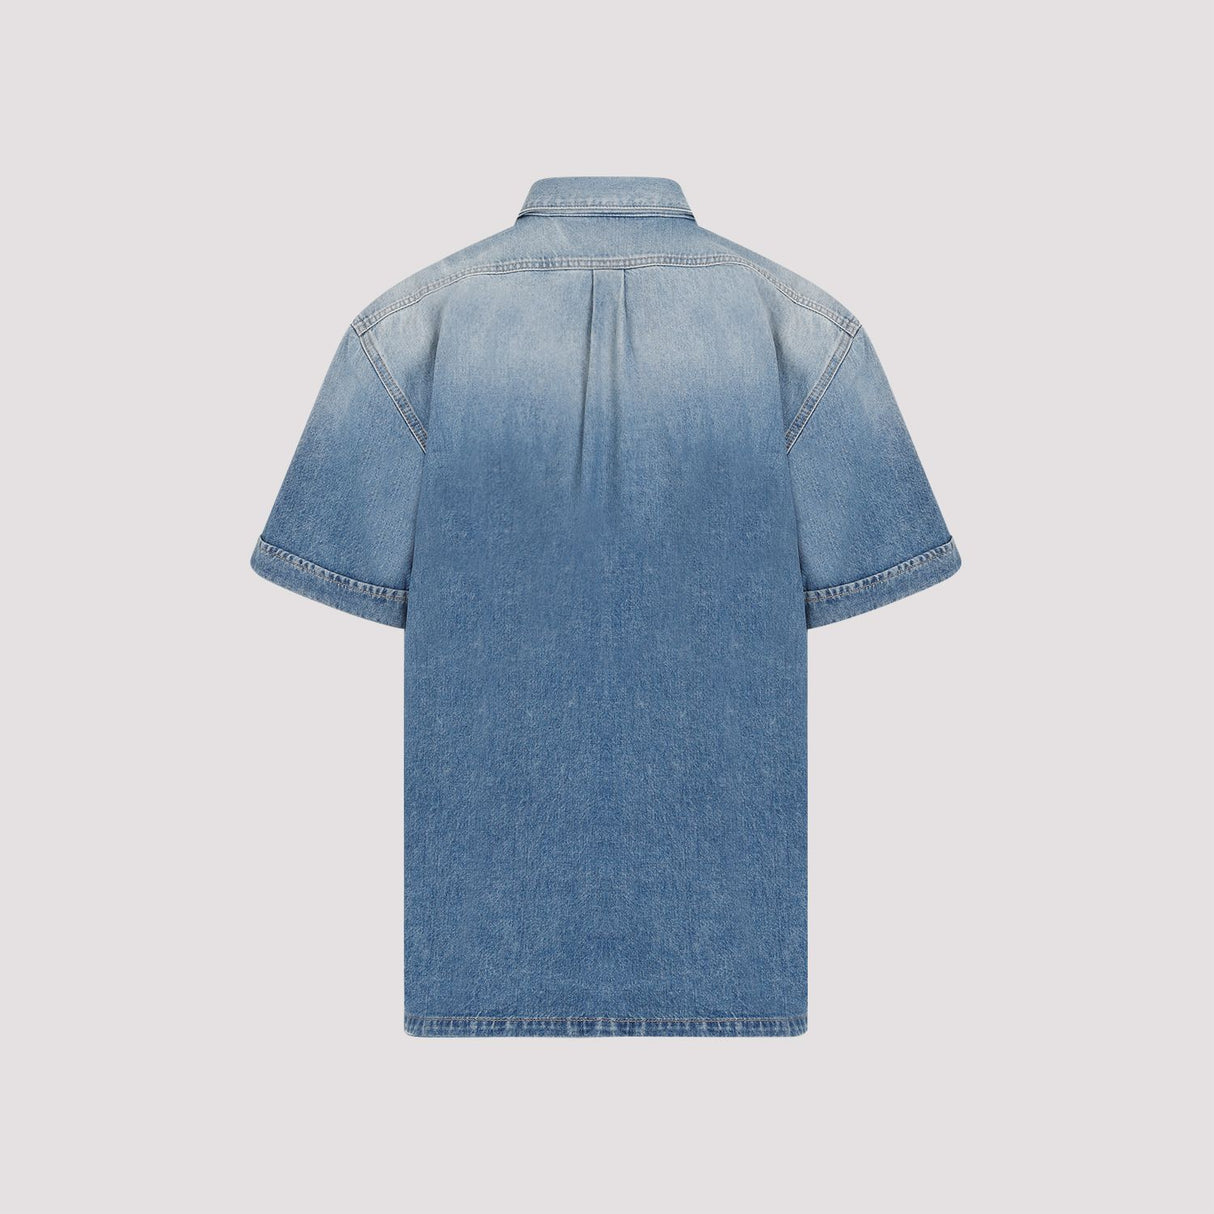 メンズ ブルー コットン 半袖シャツ - SS24 コレクション